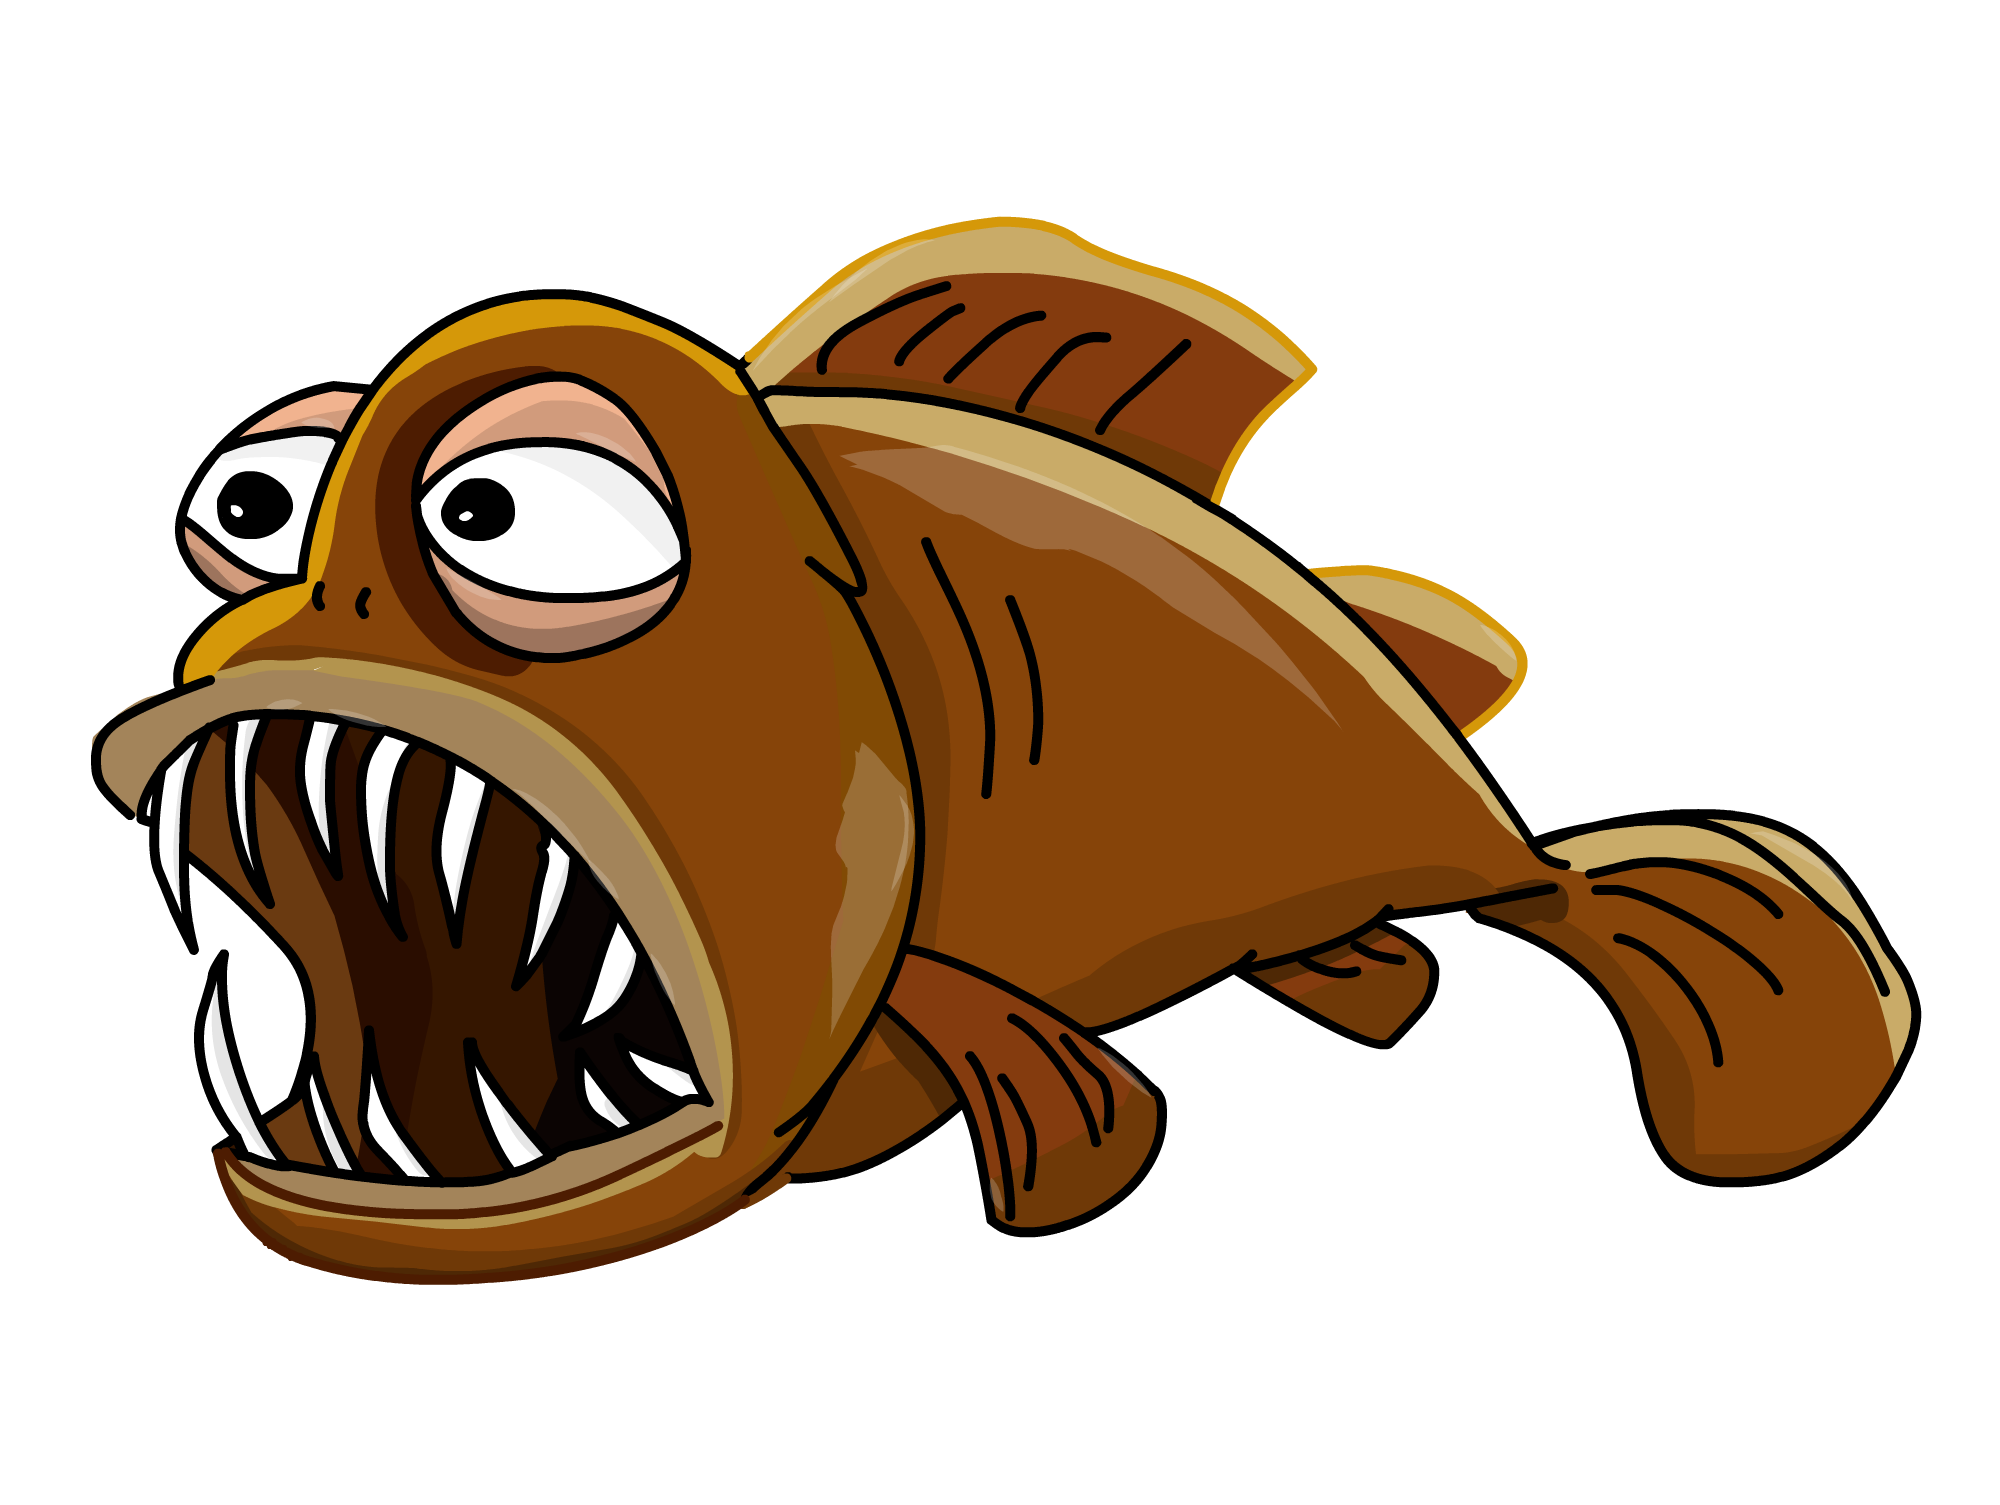 Lantern Fish drawing free image download